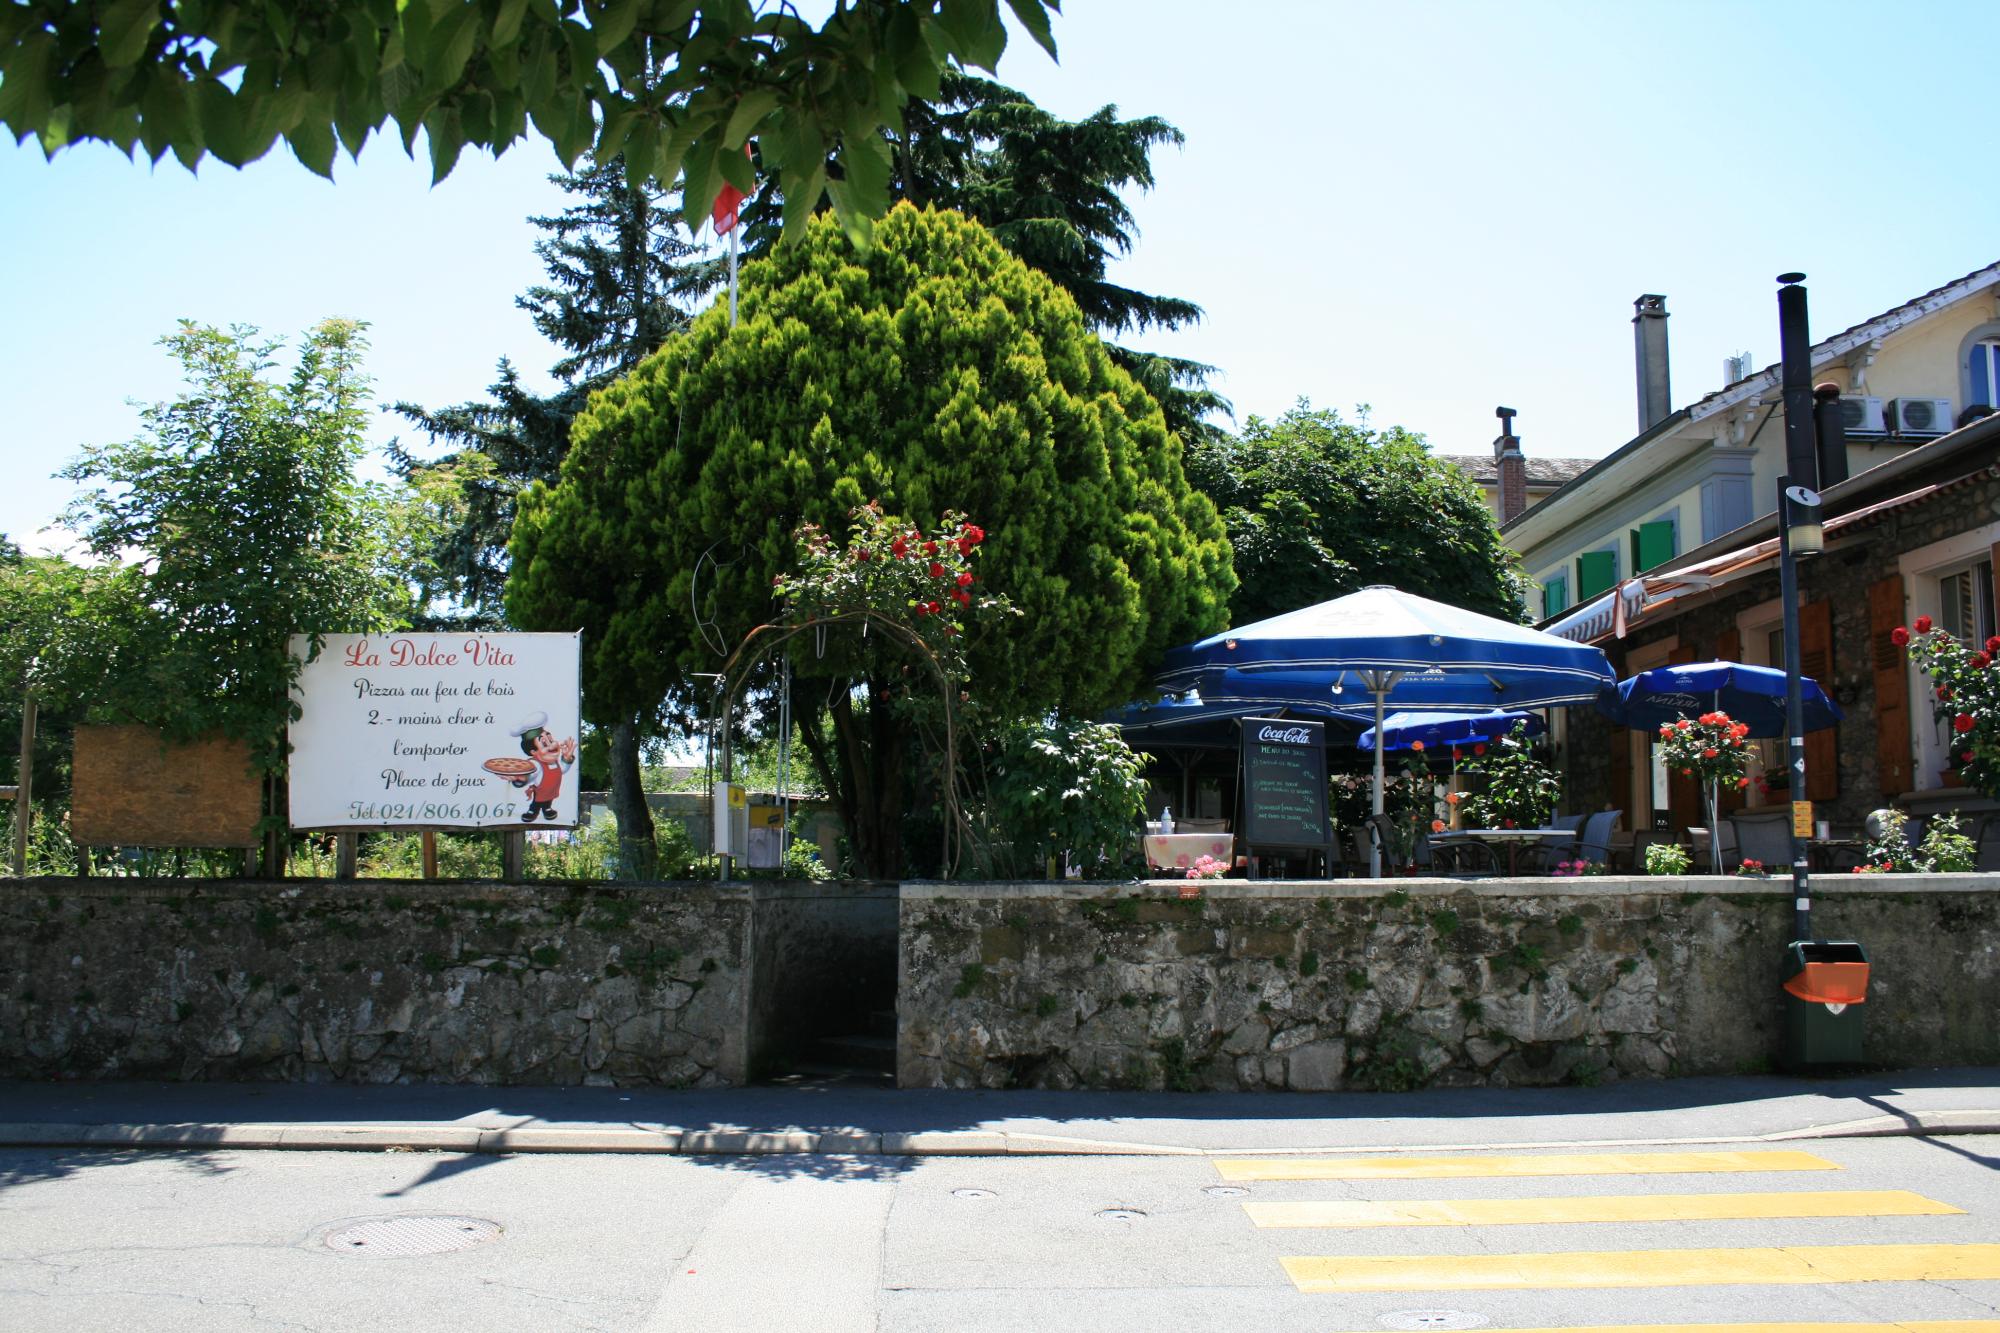 Restaurant Dolce Vita, St-Prex